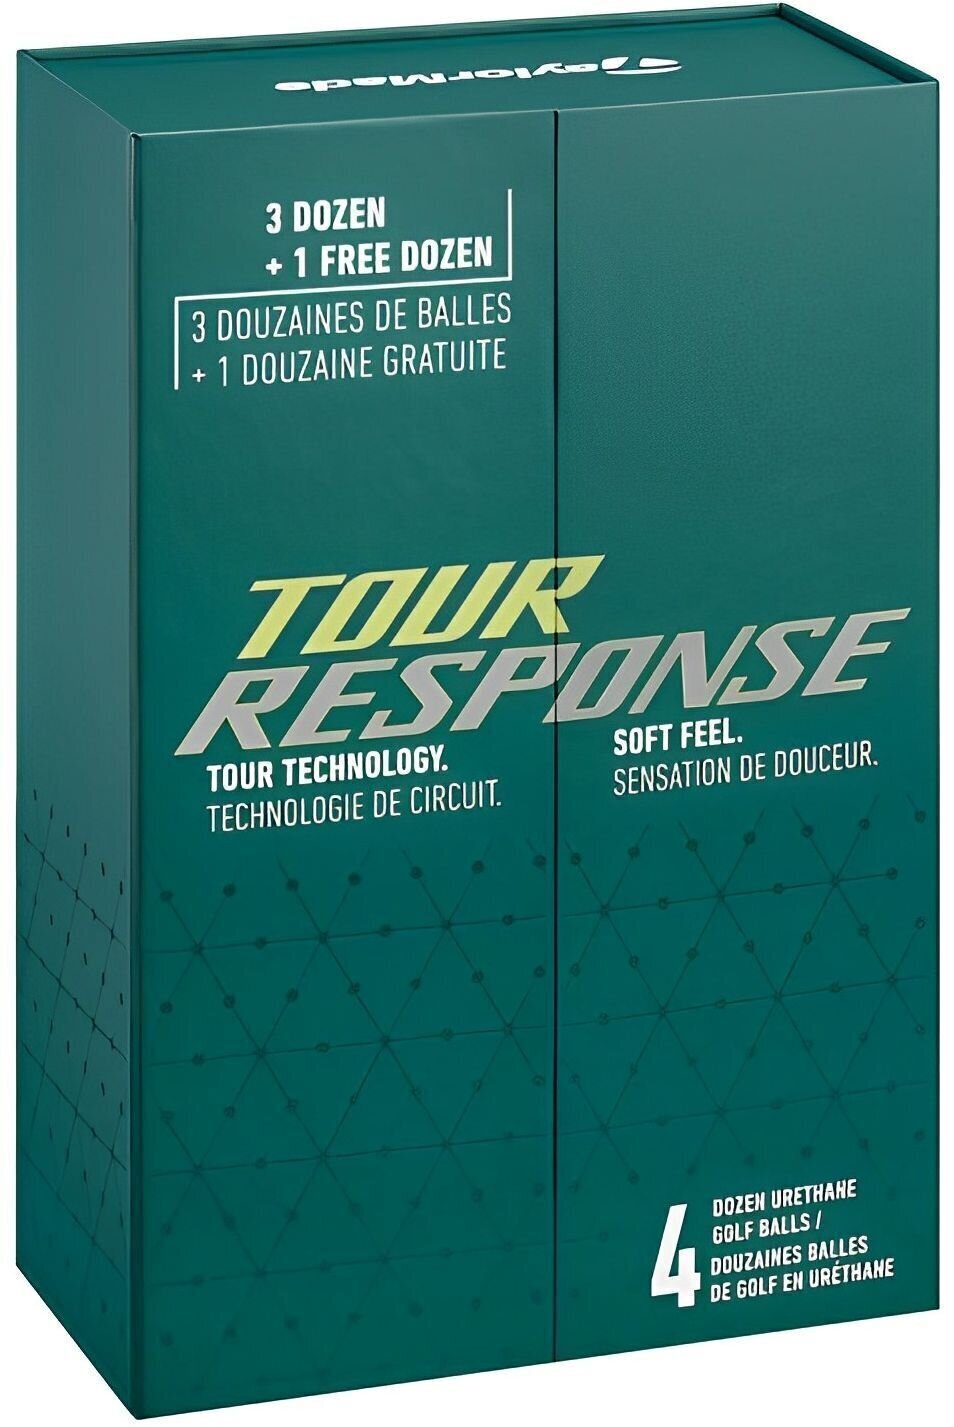 Golflabda TaylorMade Tour Response Golflabda